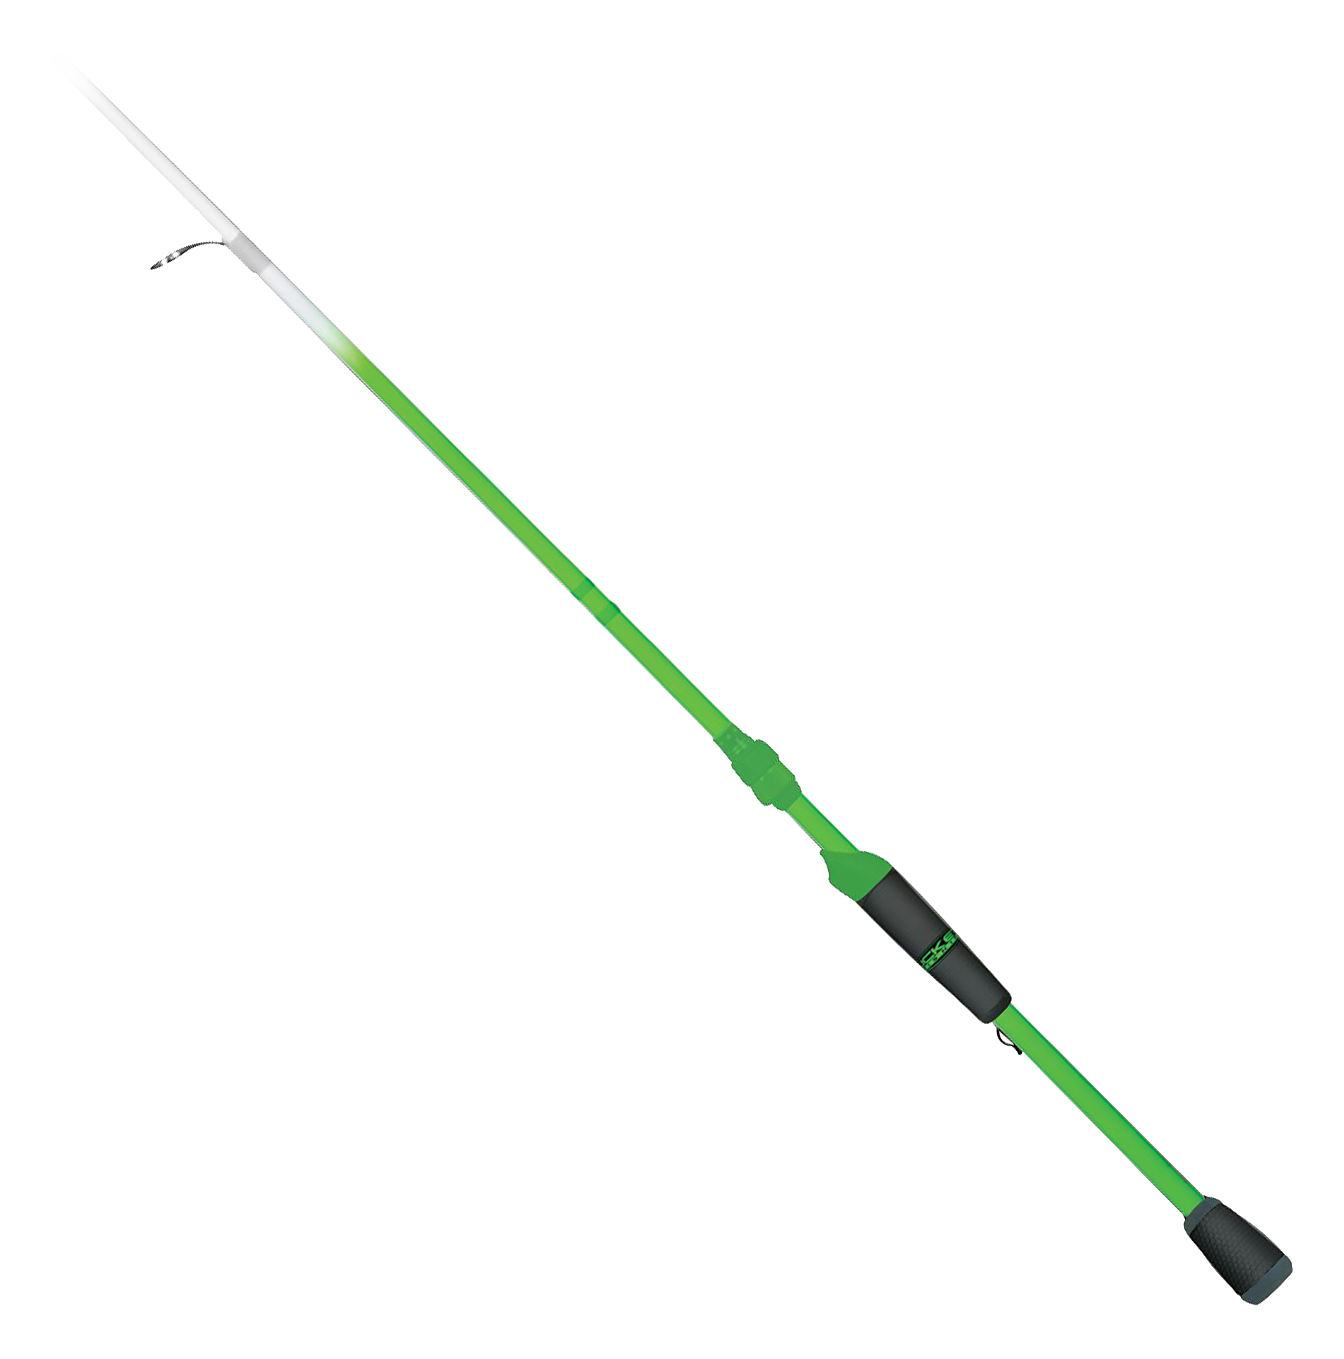 Duckett Fishing - Green Ghost Fishing Rod - 6'9 MED/FAST - Casting